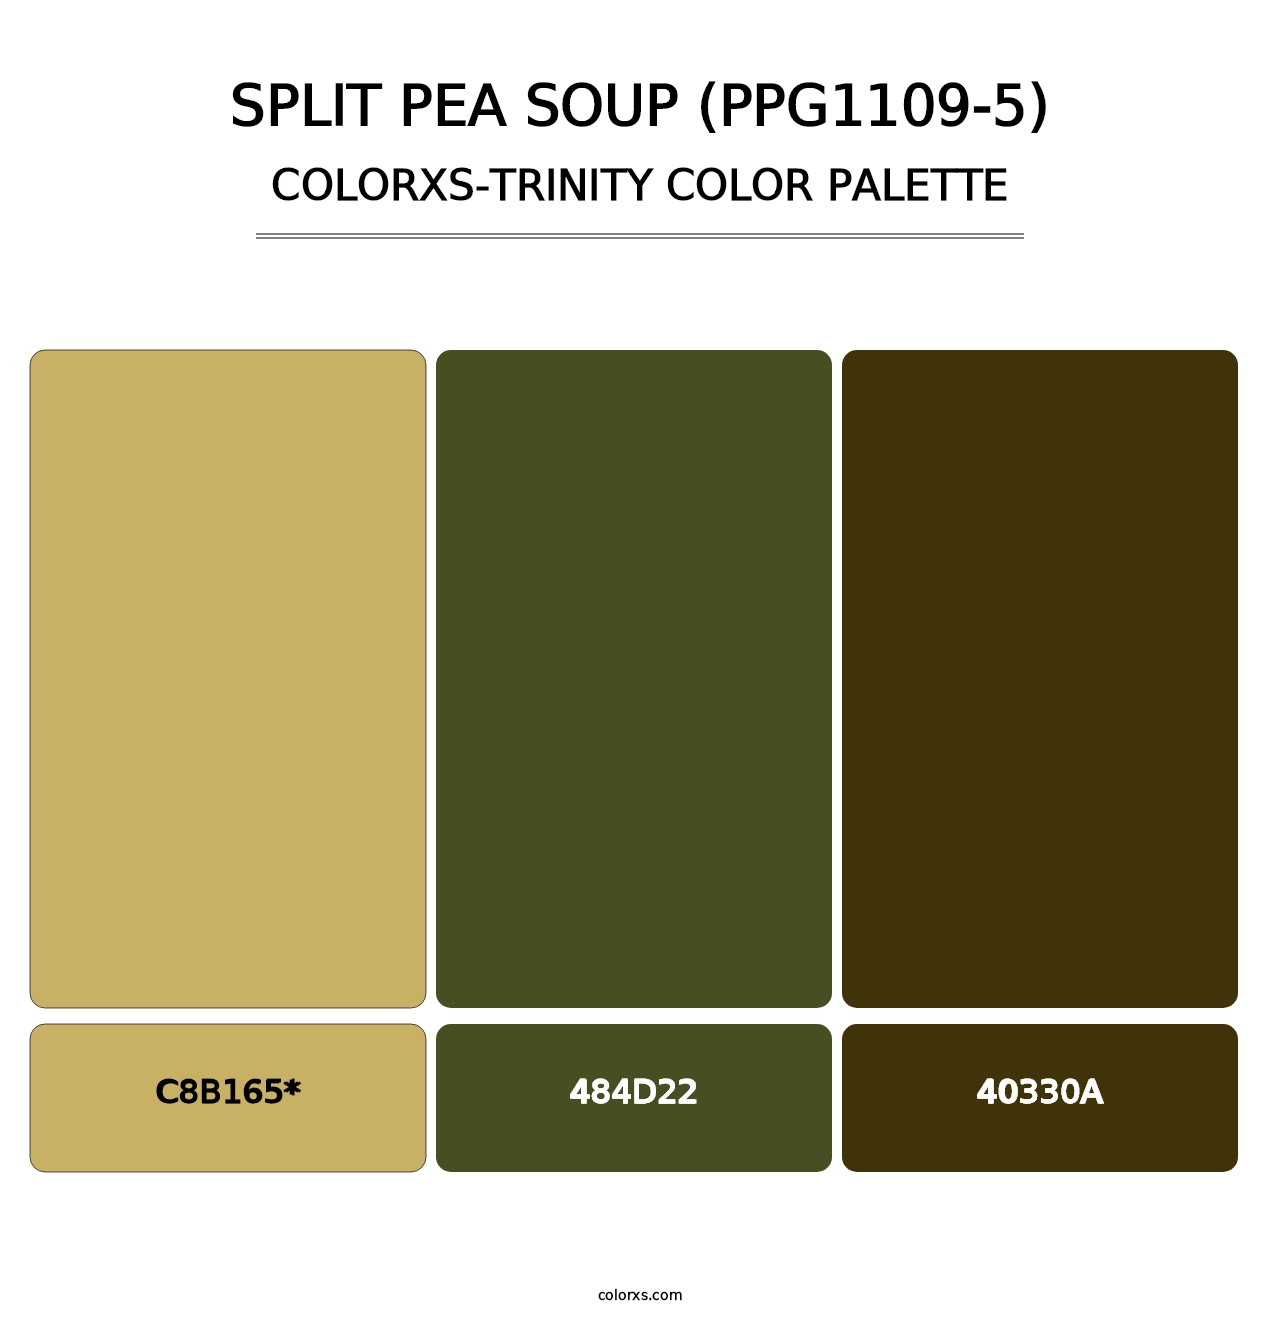 Split Pea Soup (PPG1109-5) - Colorxs Trinity Palette